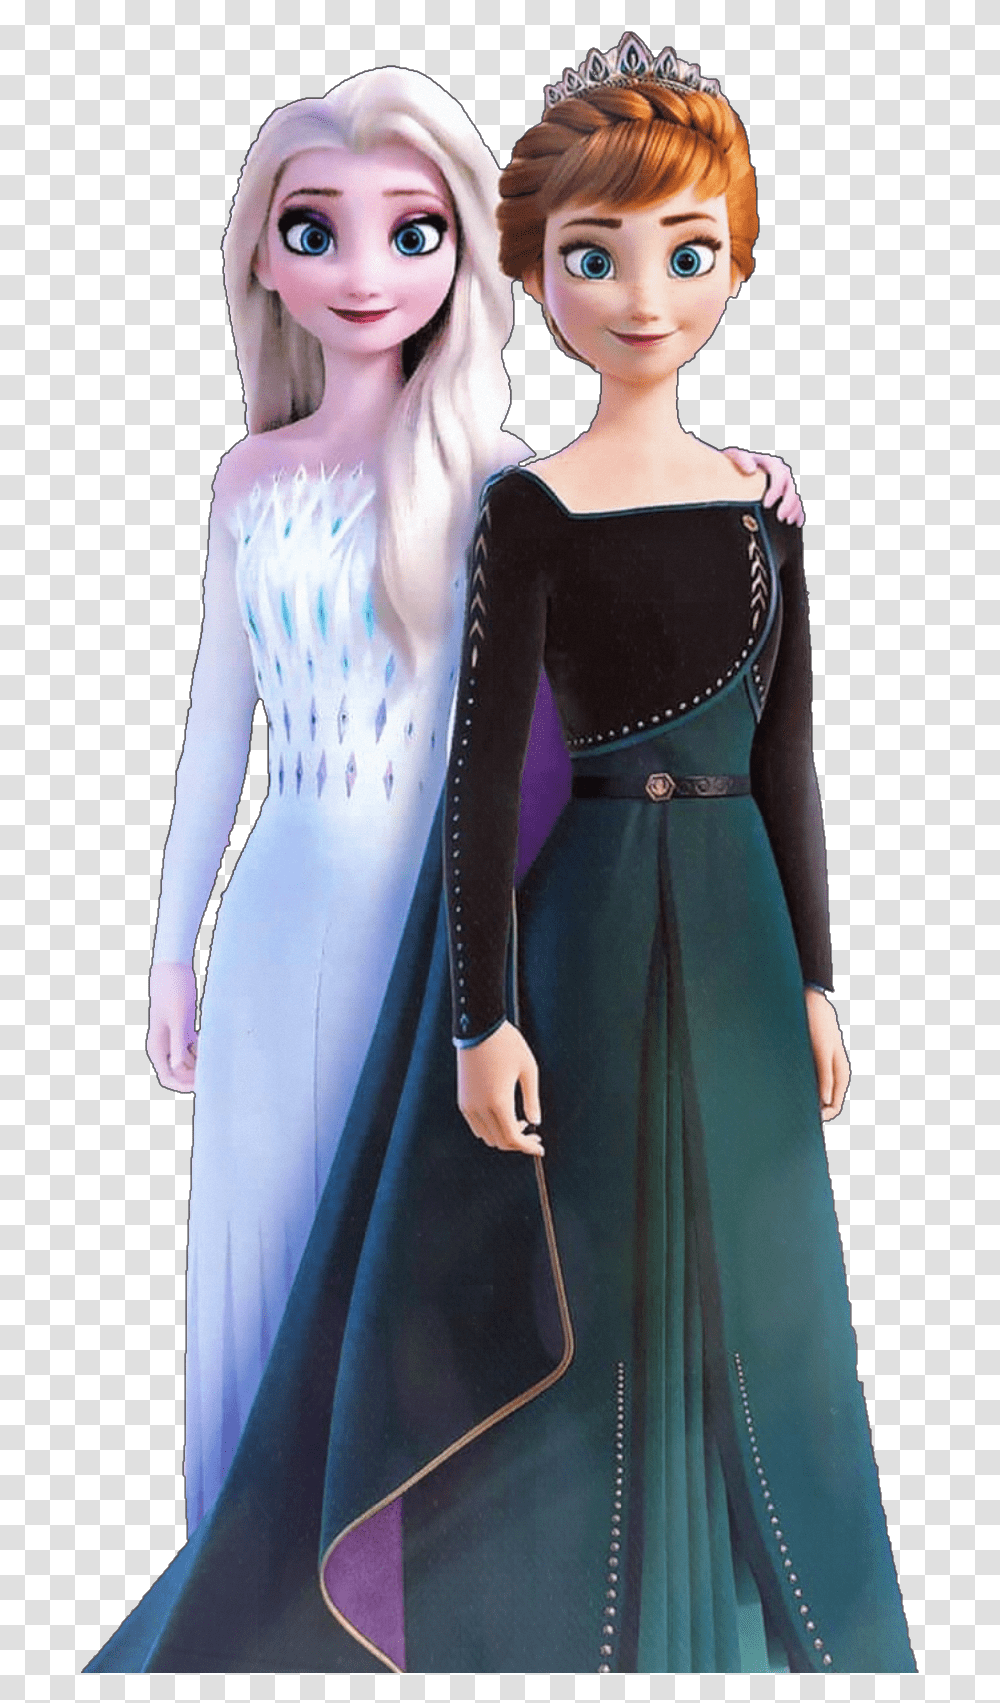 Elsa Anna Elsaandanna Frozen Frozen2 Anna Frozen Elsa, Clothing, Dress, Doll, Sleeve Transparent Png